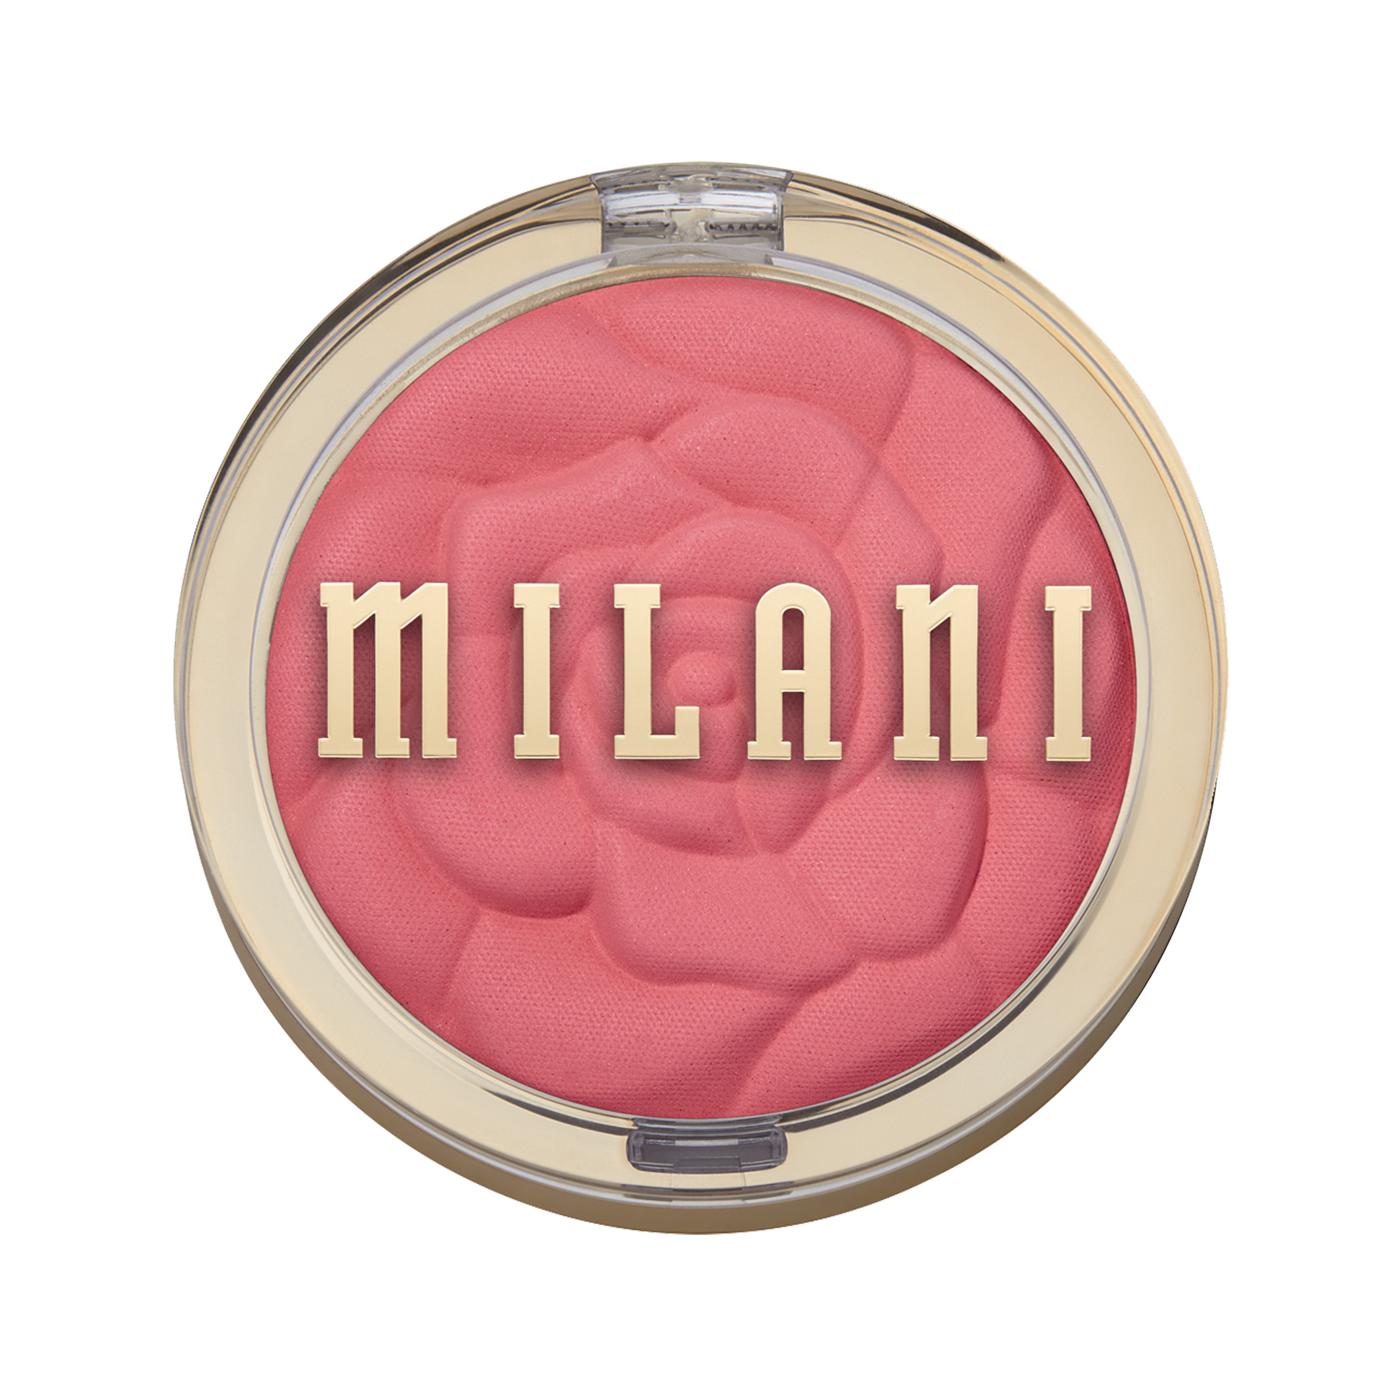 Milani Rose Powder Blush - Wild Rose; image 1 of 4